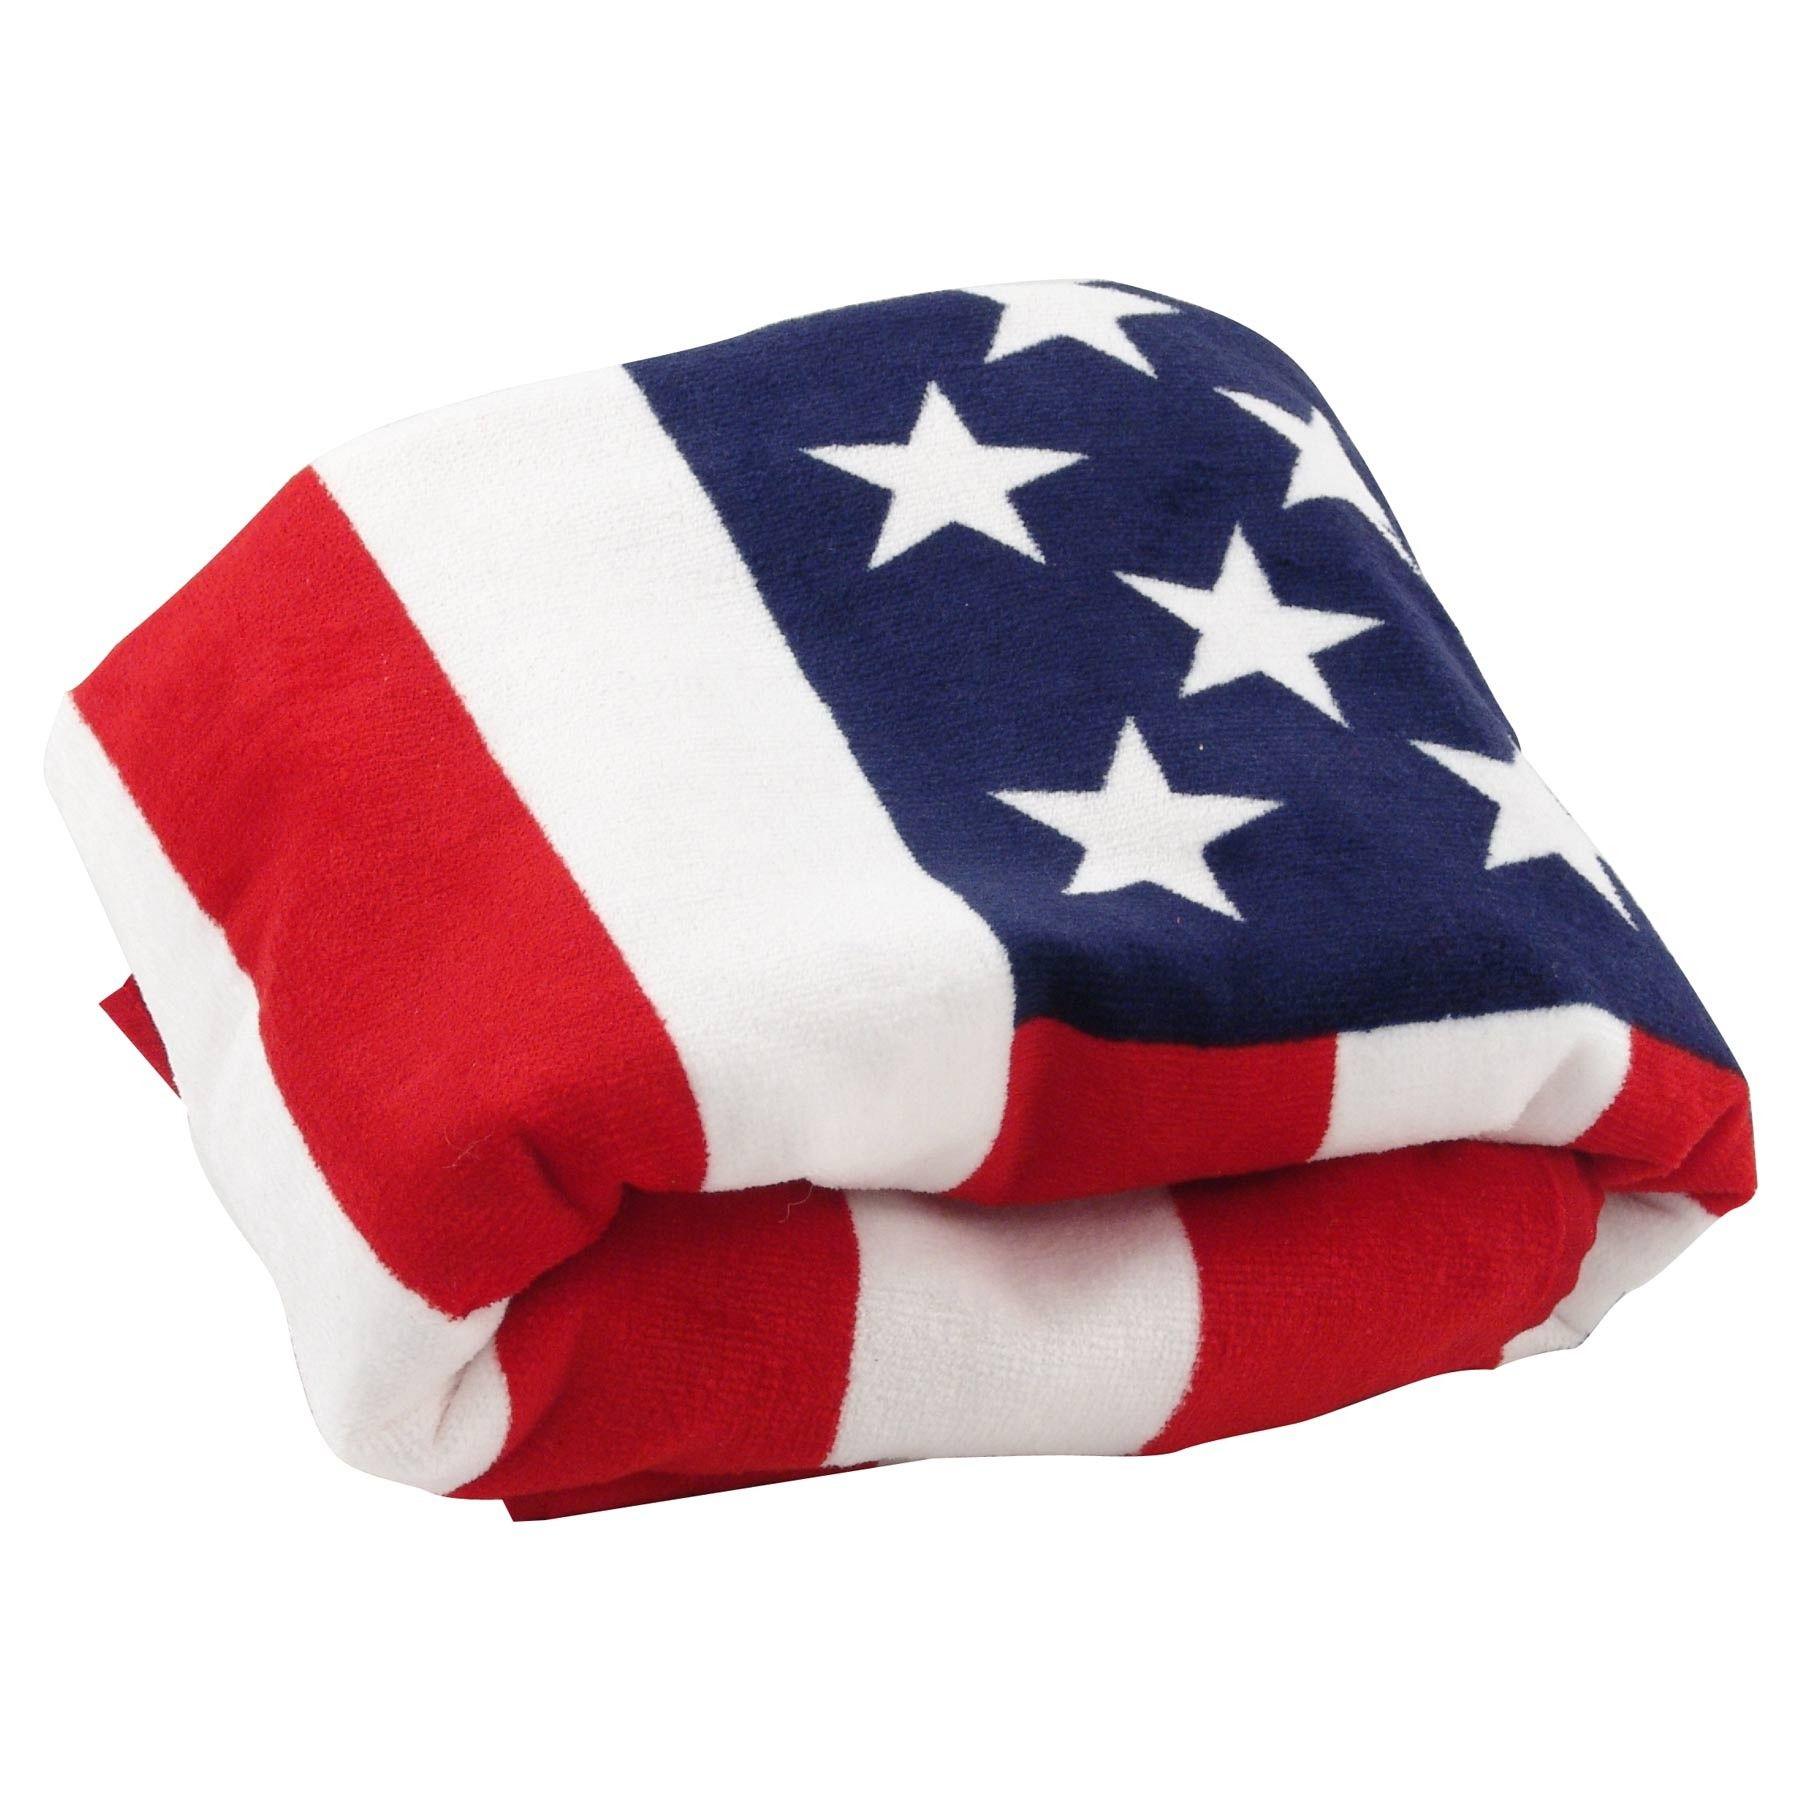 Полотенце флаг. Полотенце США. Полотенце американский флаг. Полотенце USA Pro. Хлопковый флаг.